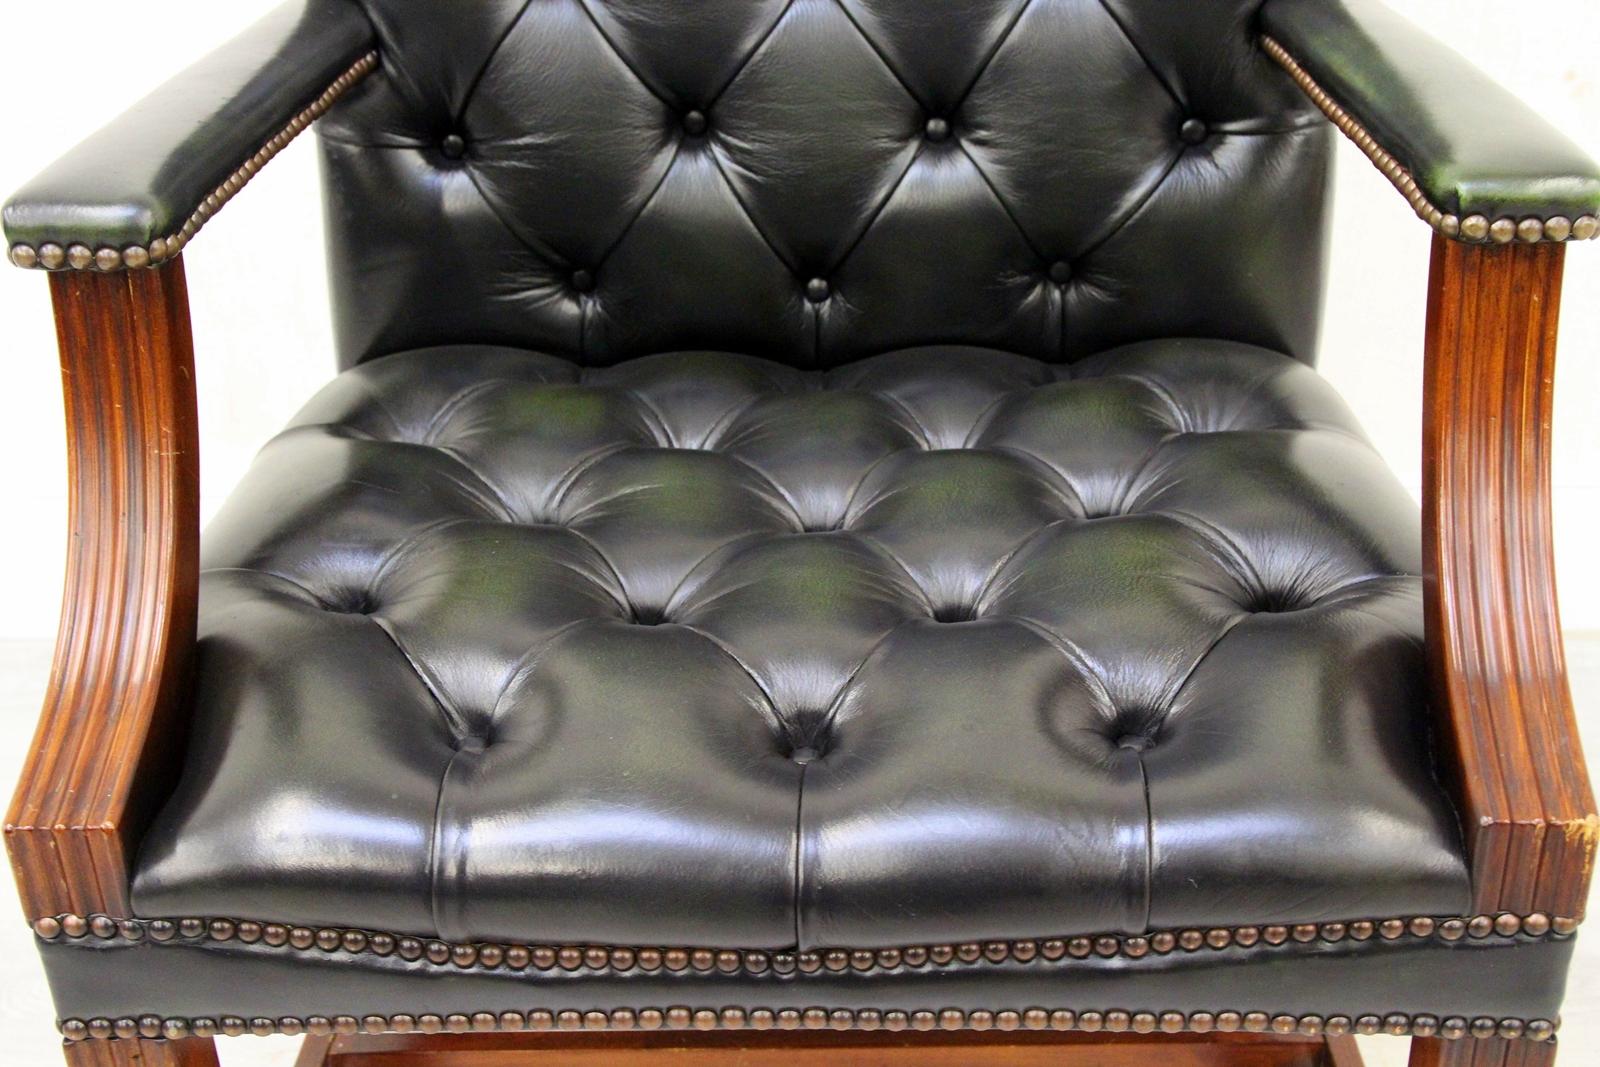 Chesterfield echt Leder Sessel von WADE( made in England)
in originellem Design
Sehr bequem und mit wuderschönen Patina
Zustand: Ded Sessel ist in SEHR einem gutem Zustand
Stuhl
H x 103cm, B x 63cm, T x 70cm
Polster ist in einem SEHR gutem